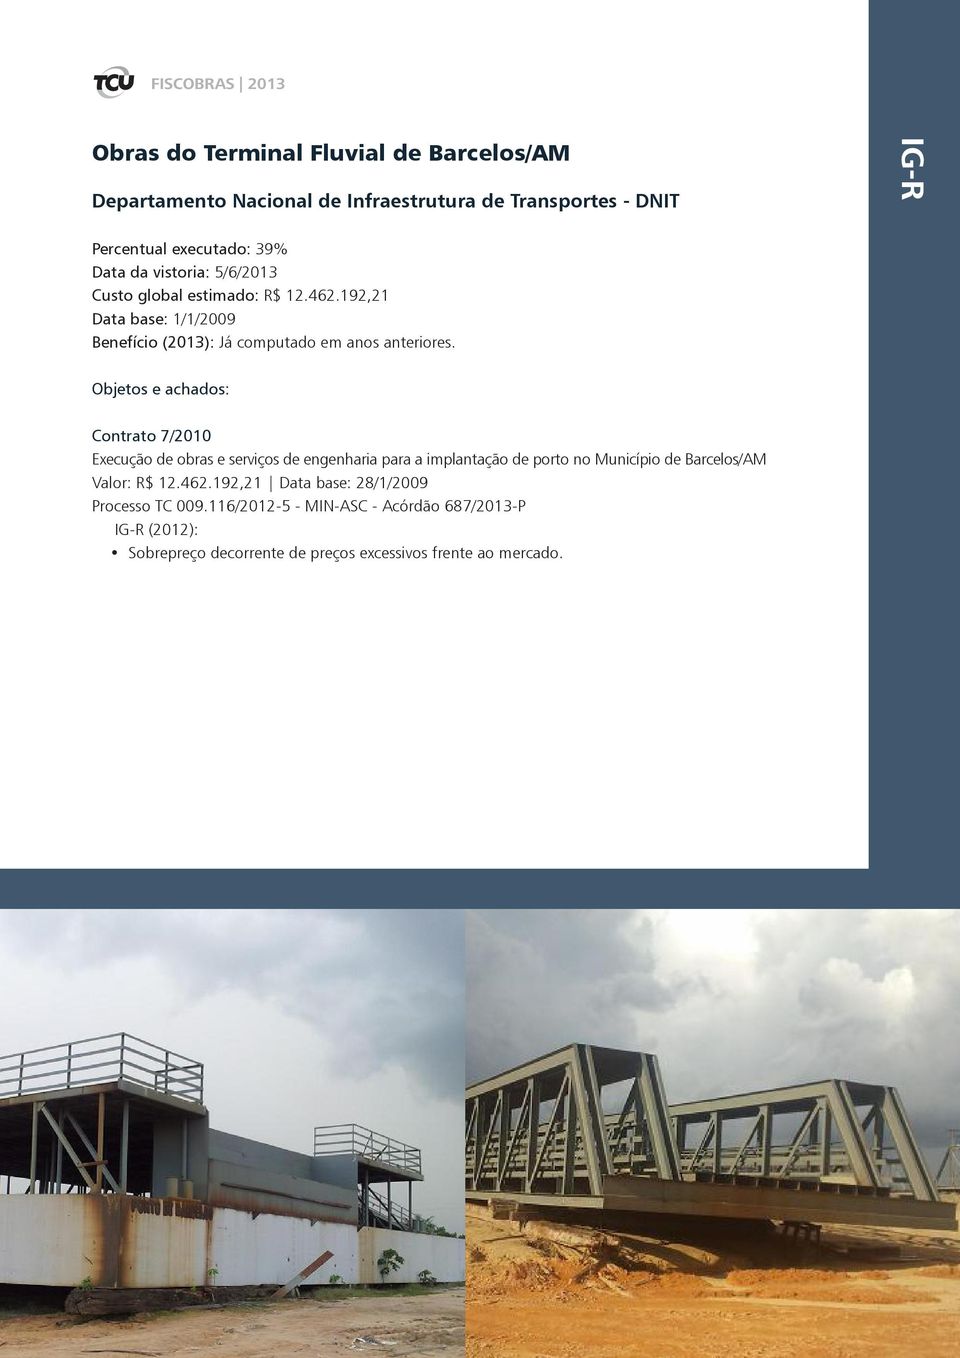 Objetos e achados: Contrato 7/2010 Execução de obras e serviços de engenharia para a implantação de porto no Município de Barcelos/AM Valor: R$ 12.